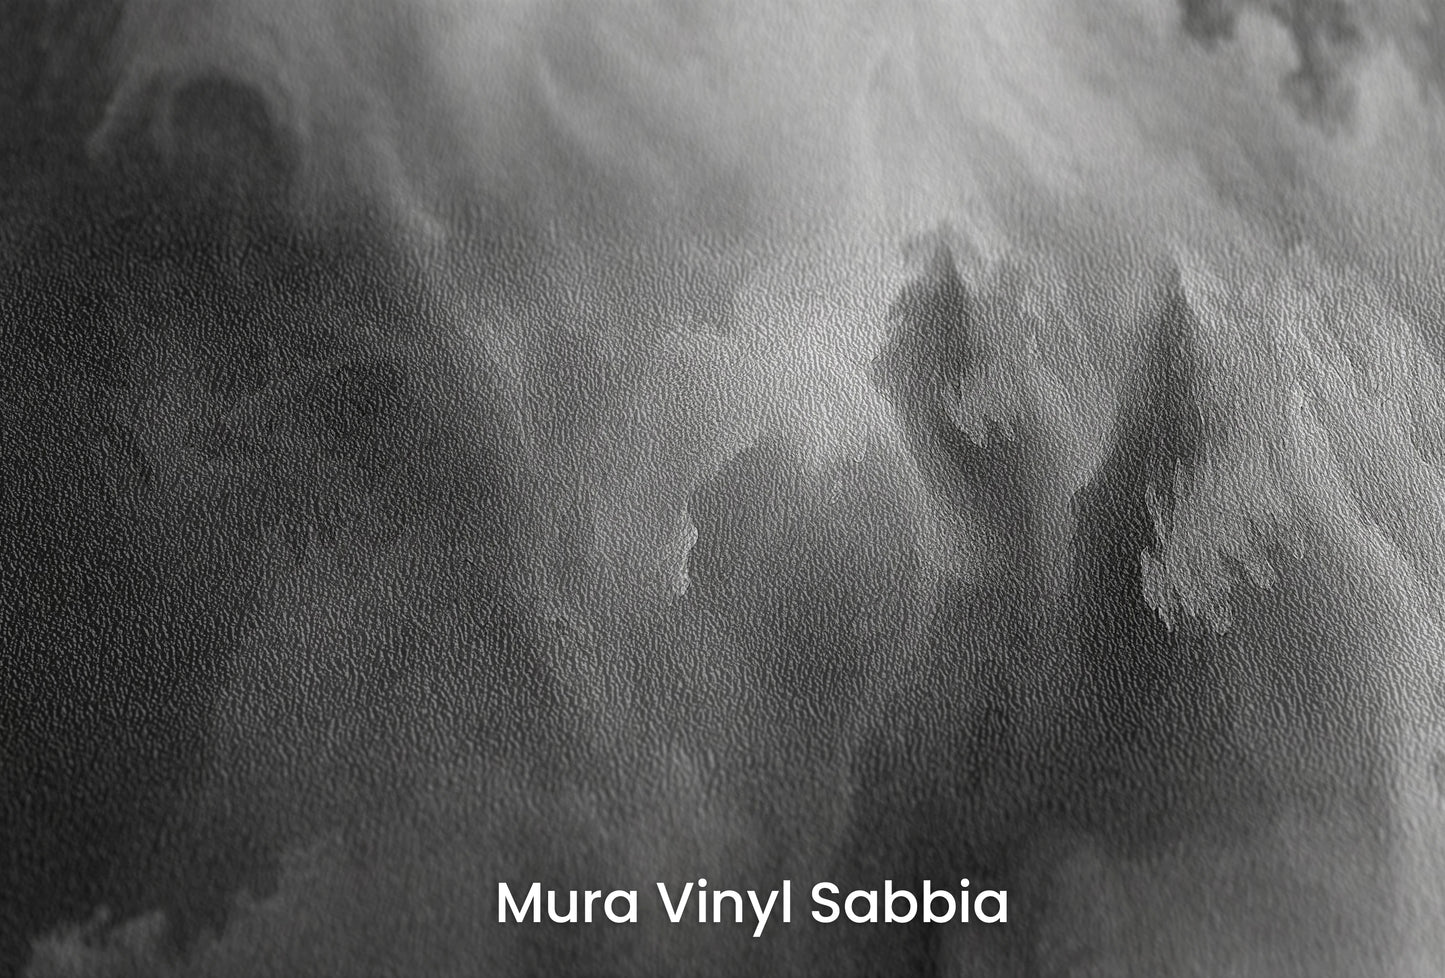 Zbliżenie na artystyczną fototapetę o nazwie Abstract Storm na podłożu Mura Vinyl Sabbia struktura grubego ziarna piasku.